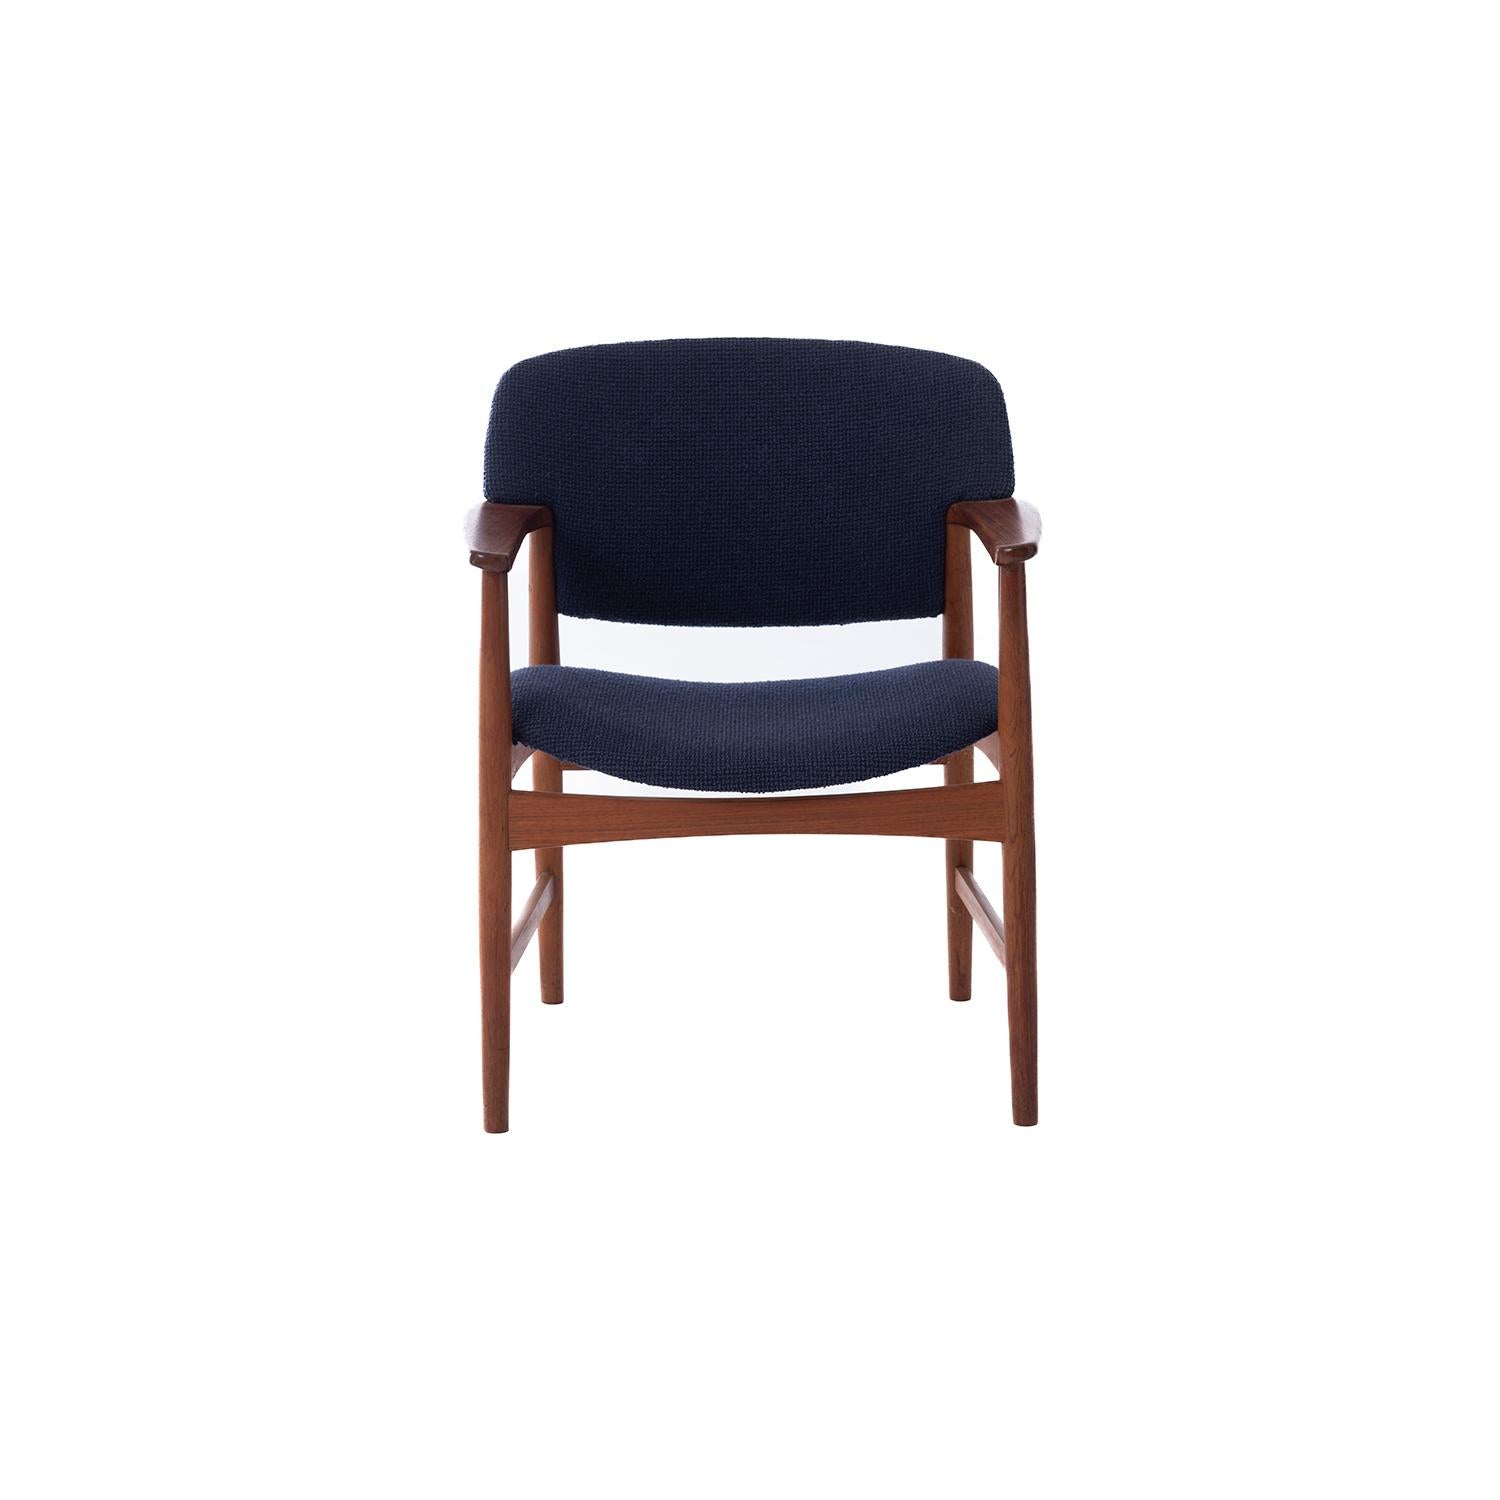 Moderner dänischer Sessel aus Teakholz und Wolle, entworfen von Ejnar Larsen & Aksel Bender Madsen. Siehe separates Angebot für den passenden gepolsterten Fußhocker.